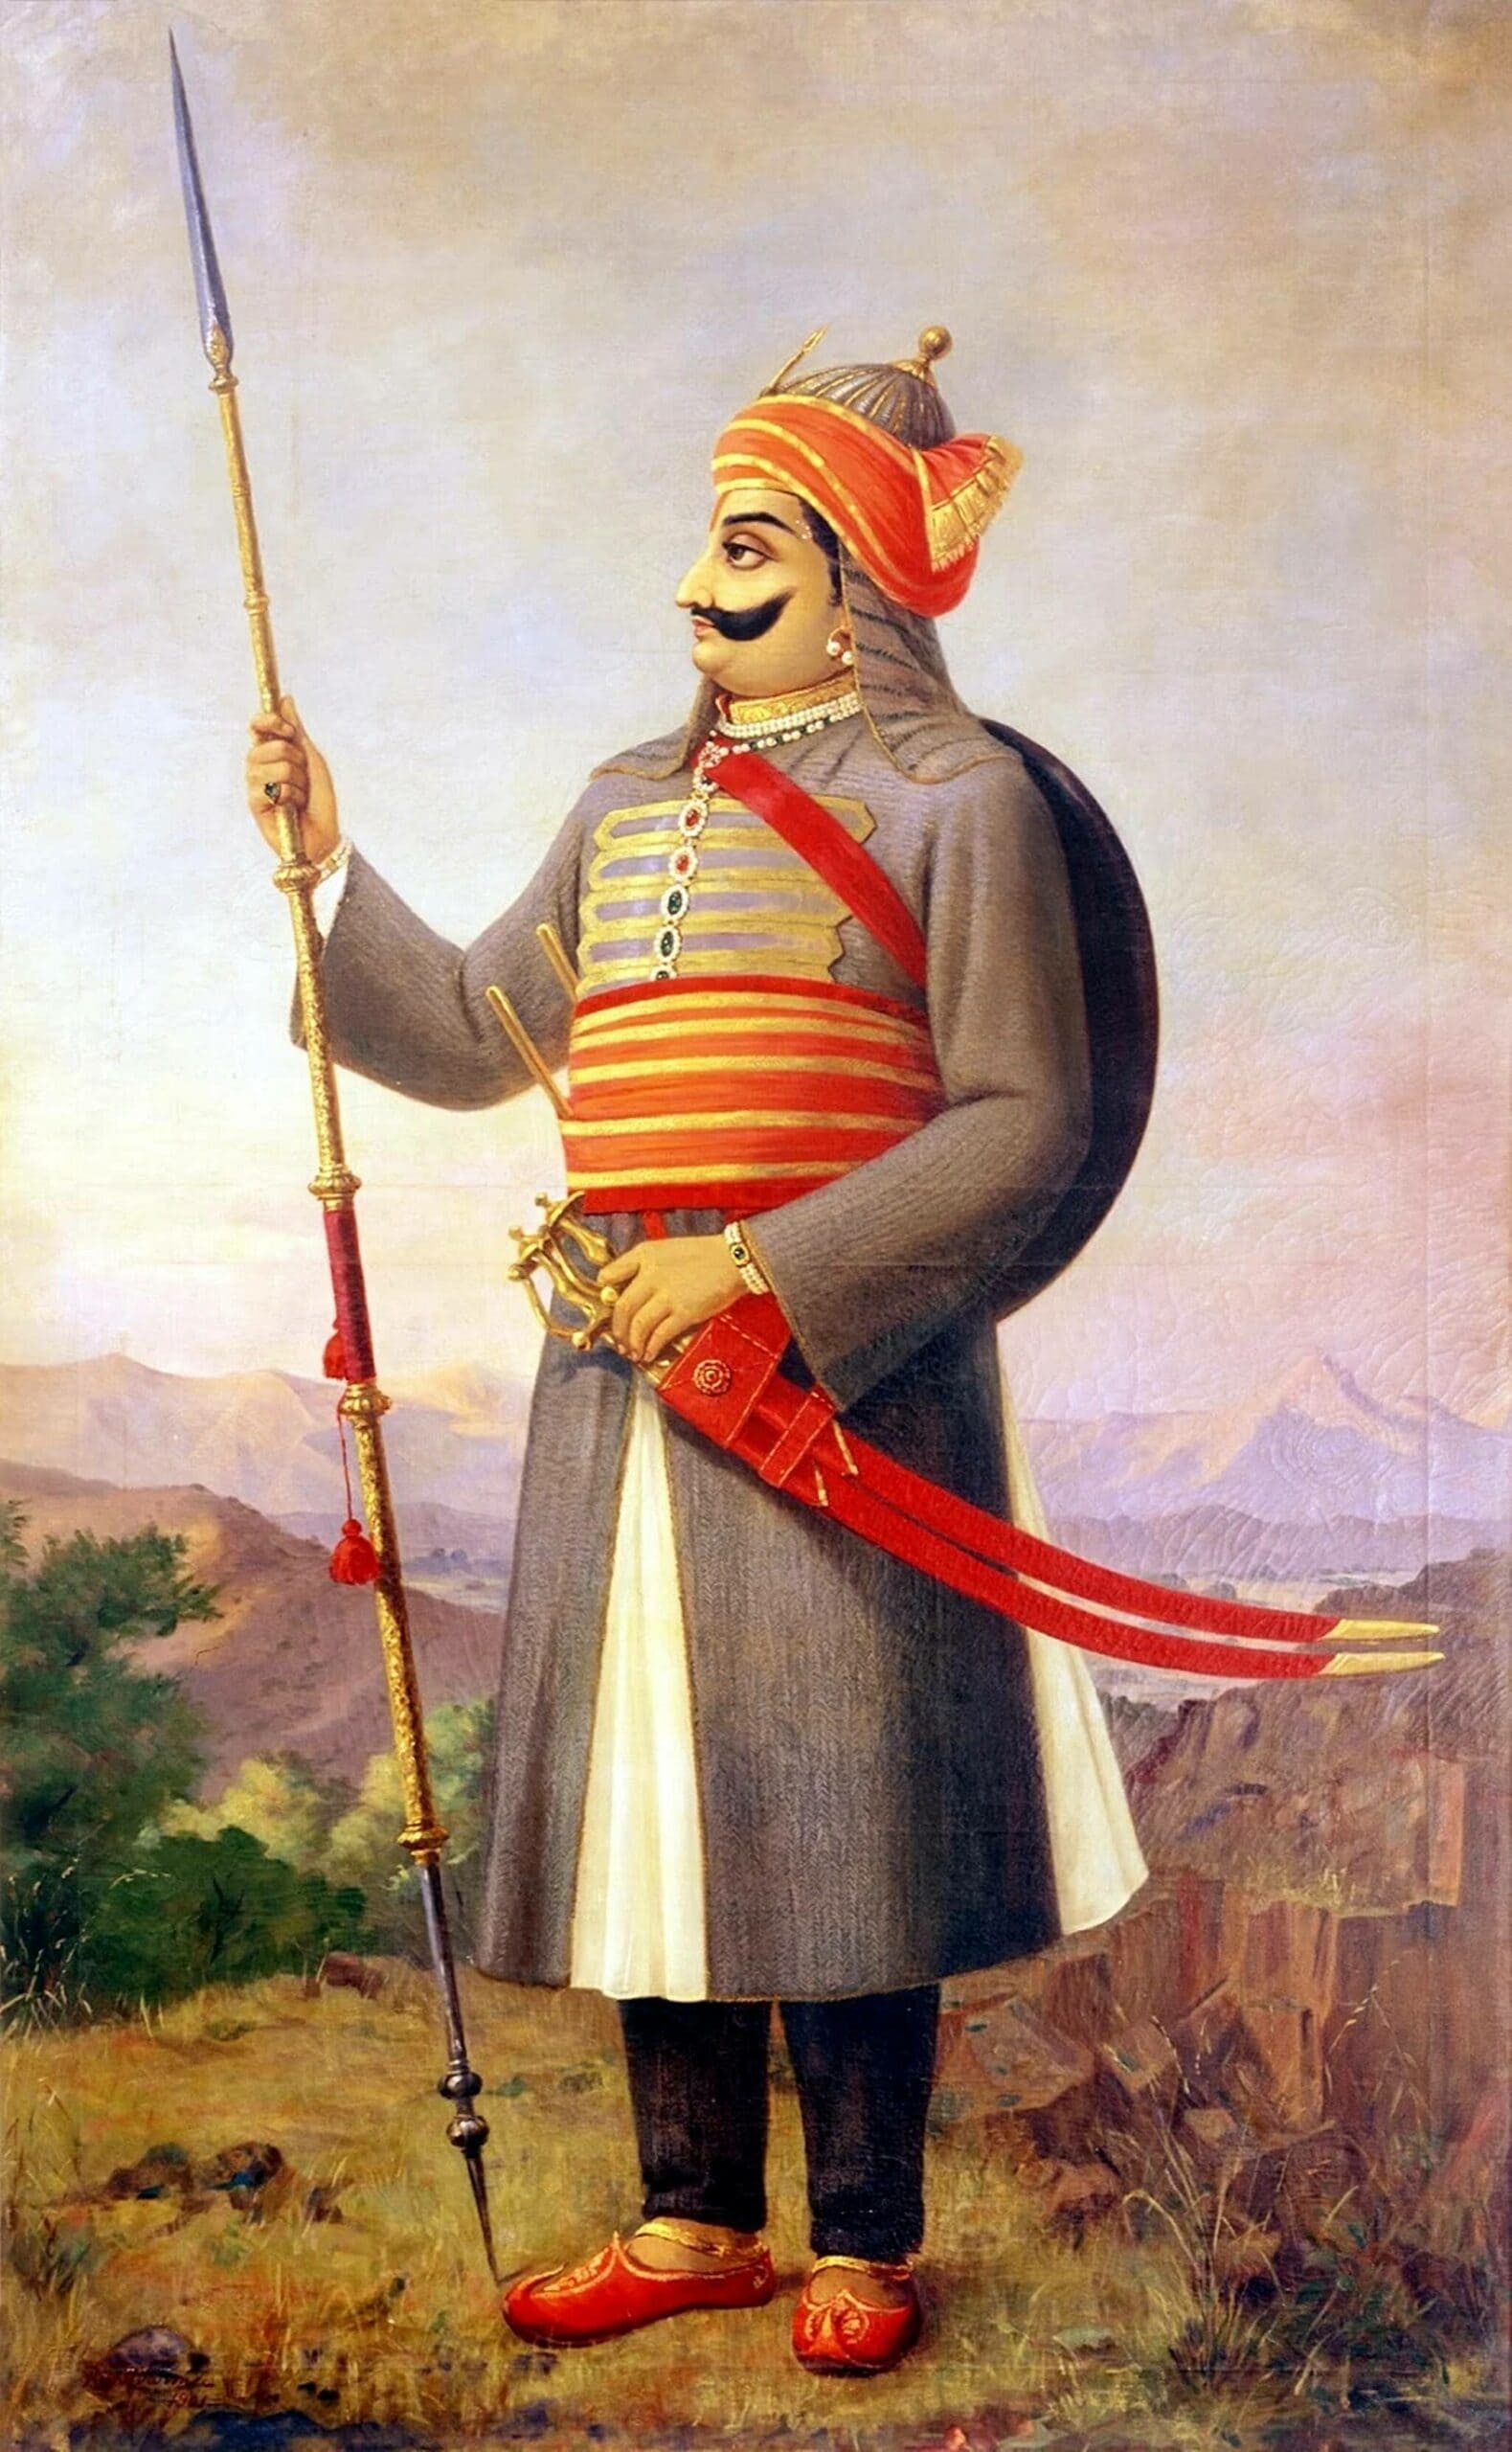 Maharana Pratap Holding Spear in Hand